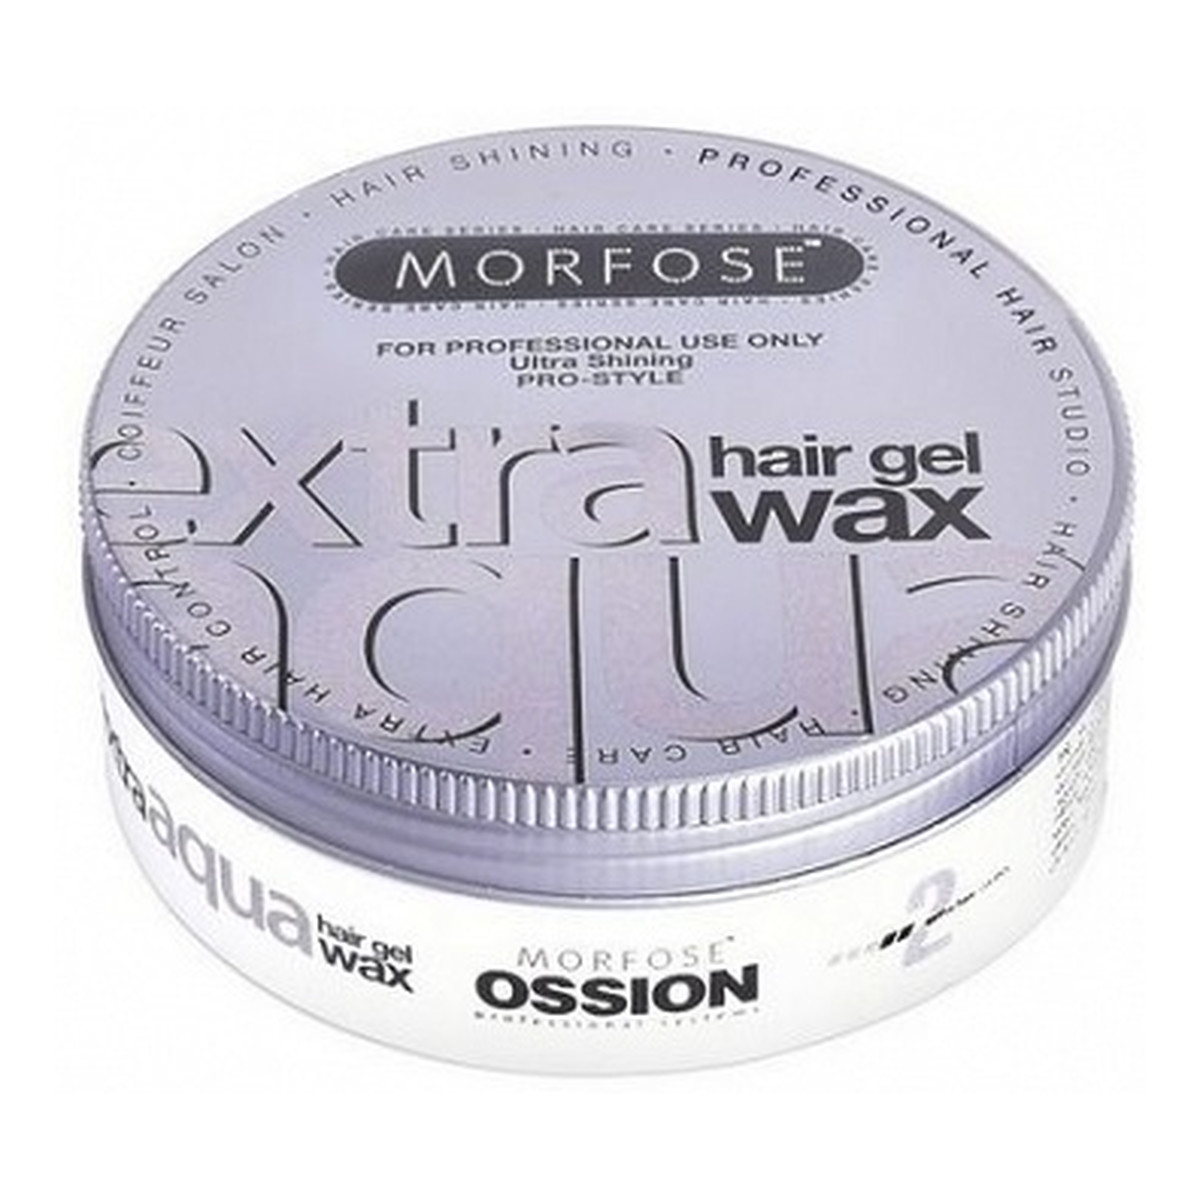 Morfose Extra aqua gel hair styling wax wosk do stylizacji włosów o zapachu gumy balonowej extra 175ml